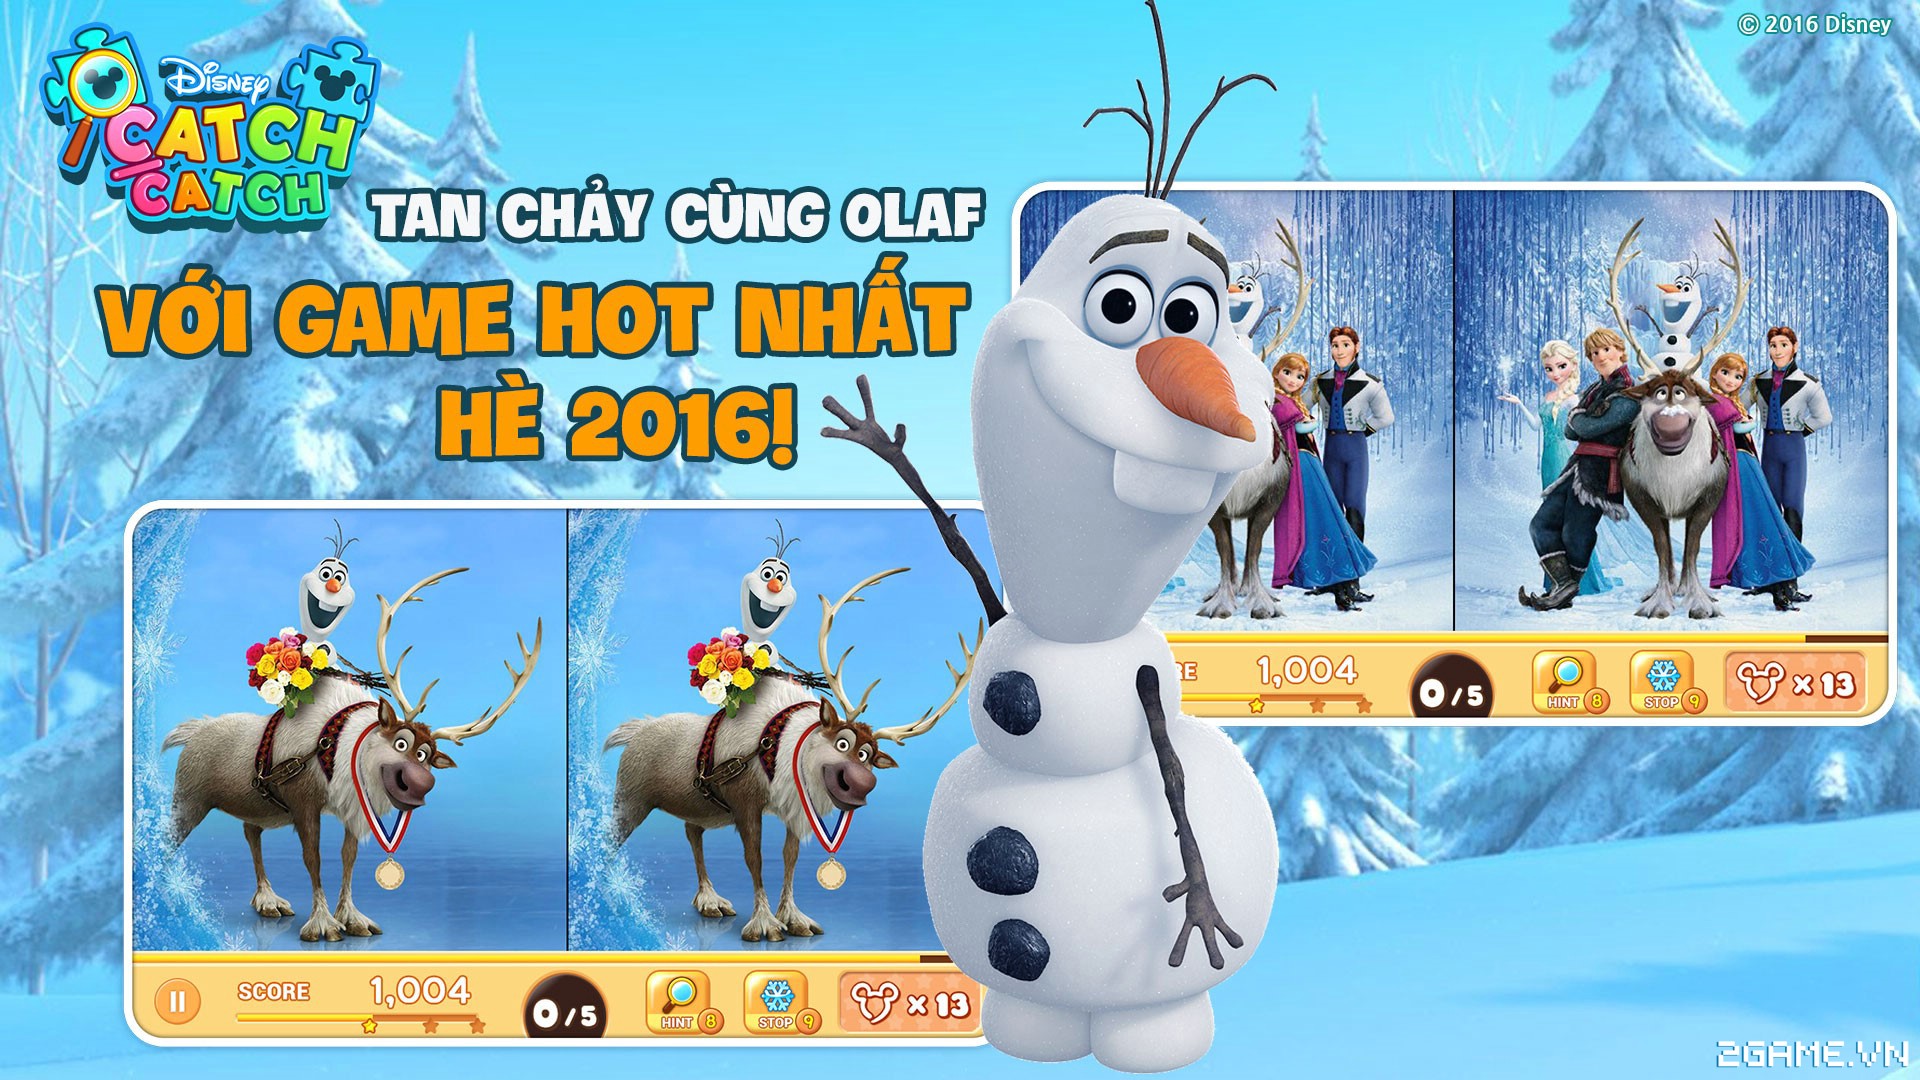 Disney Catch Catch – Của lạ của làng game Việt 0